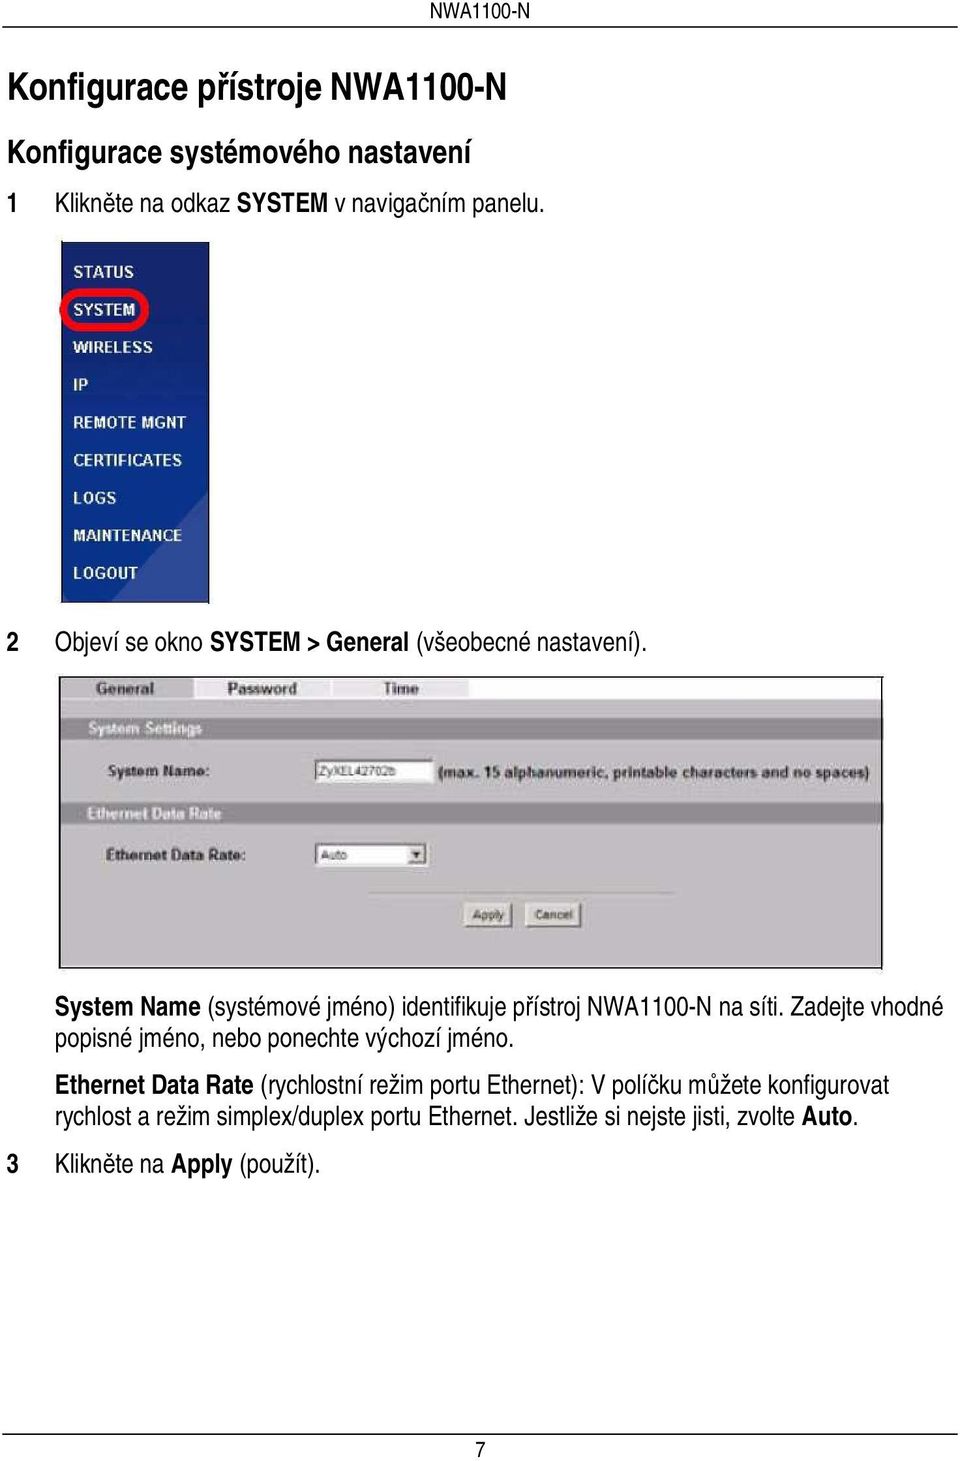 System Name (systémové jméno) identifikuje přístroj NWA1100-N na síti.